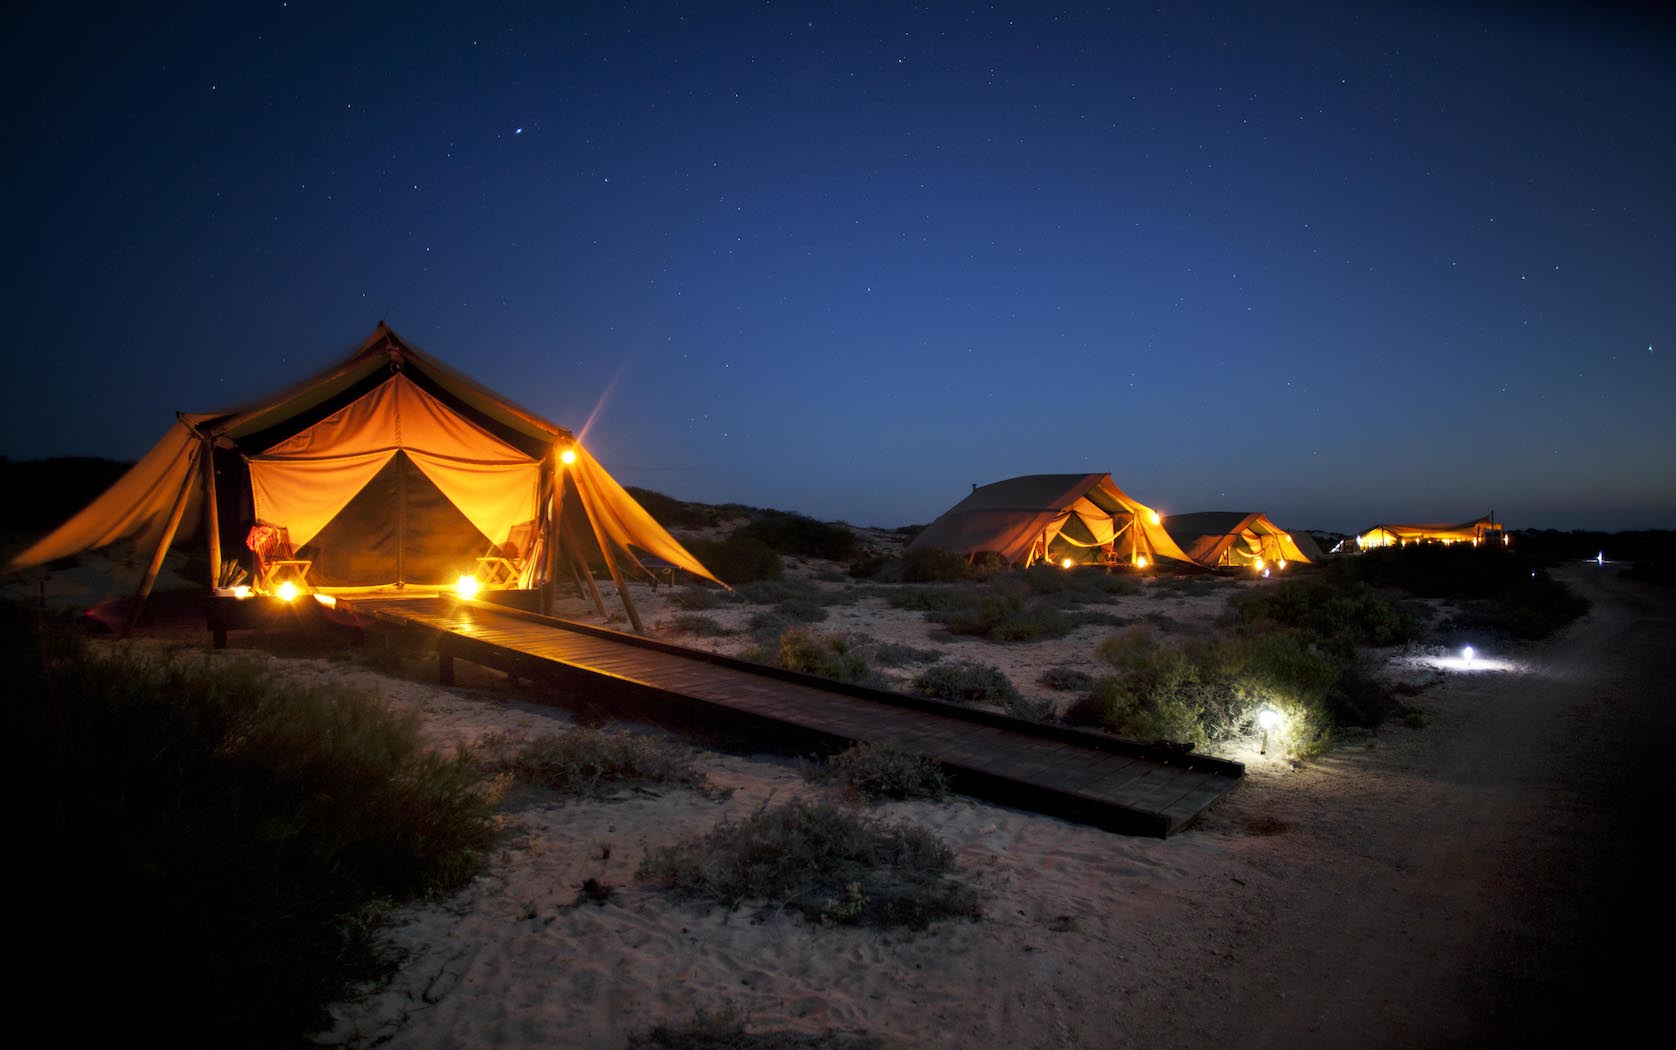 Sal-Salis-Tents-at-Night